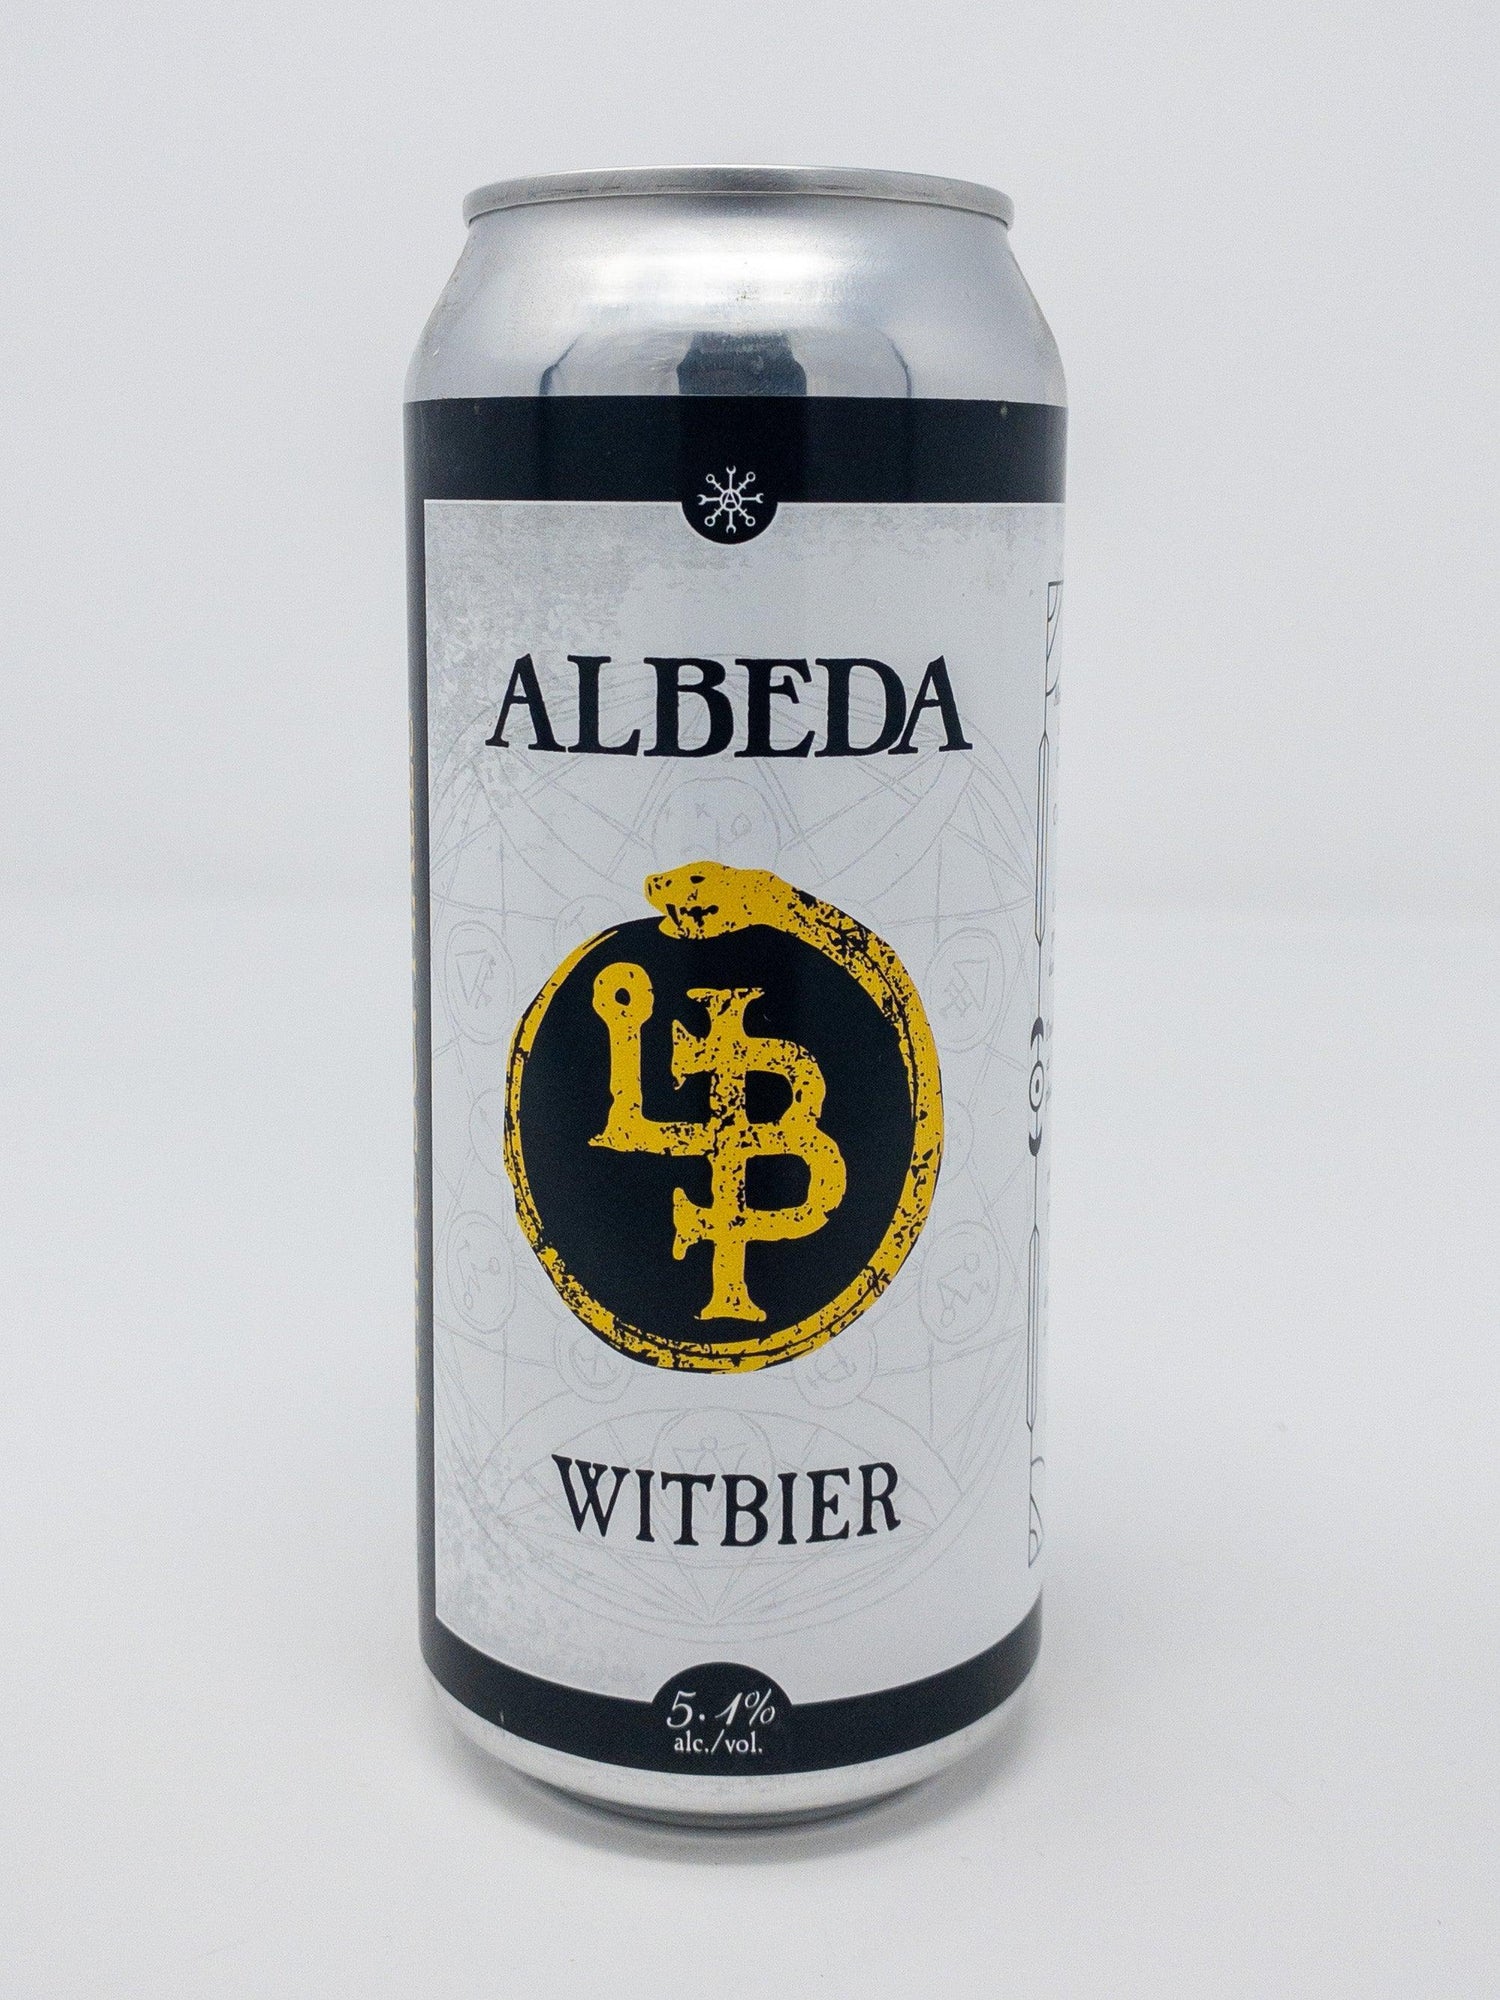 Albeda - Witbier - Blanche - Les Bières Philosophales Microbrasserie - Beau Dégât Bièrerie de Quartier